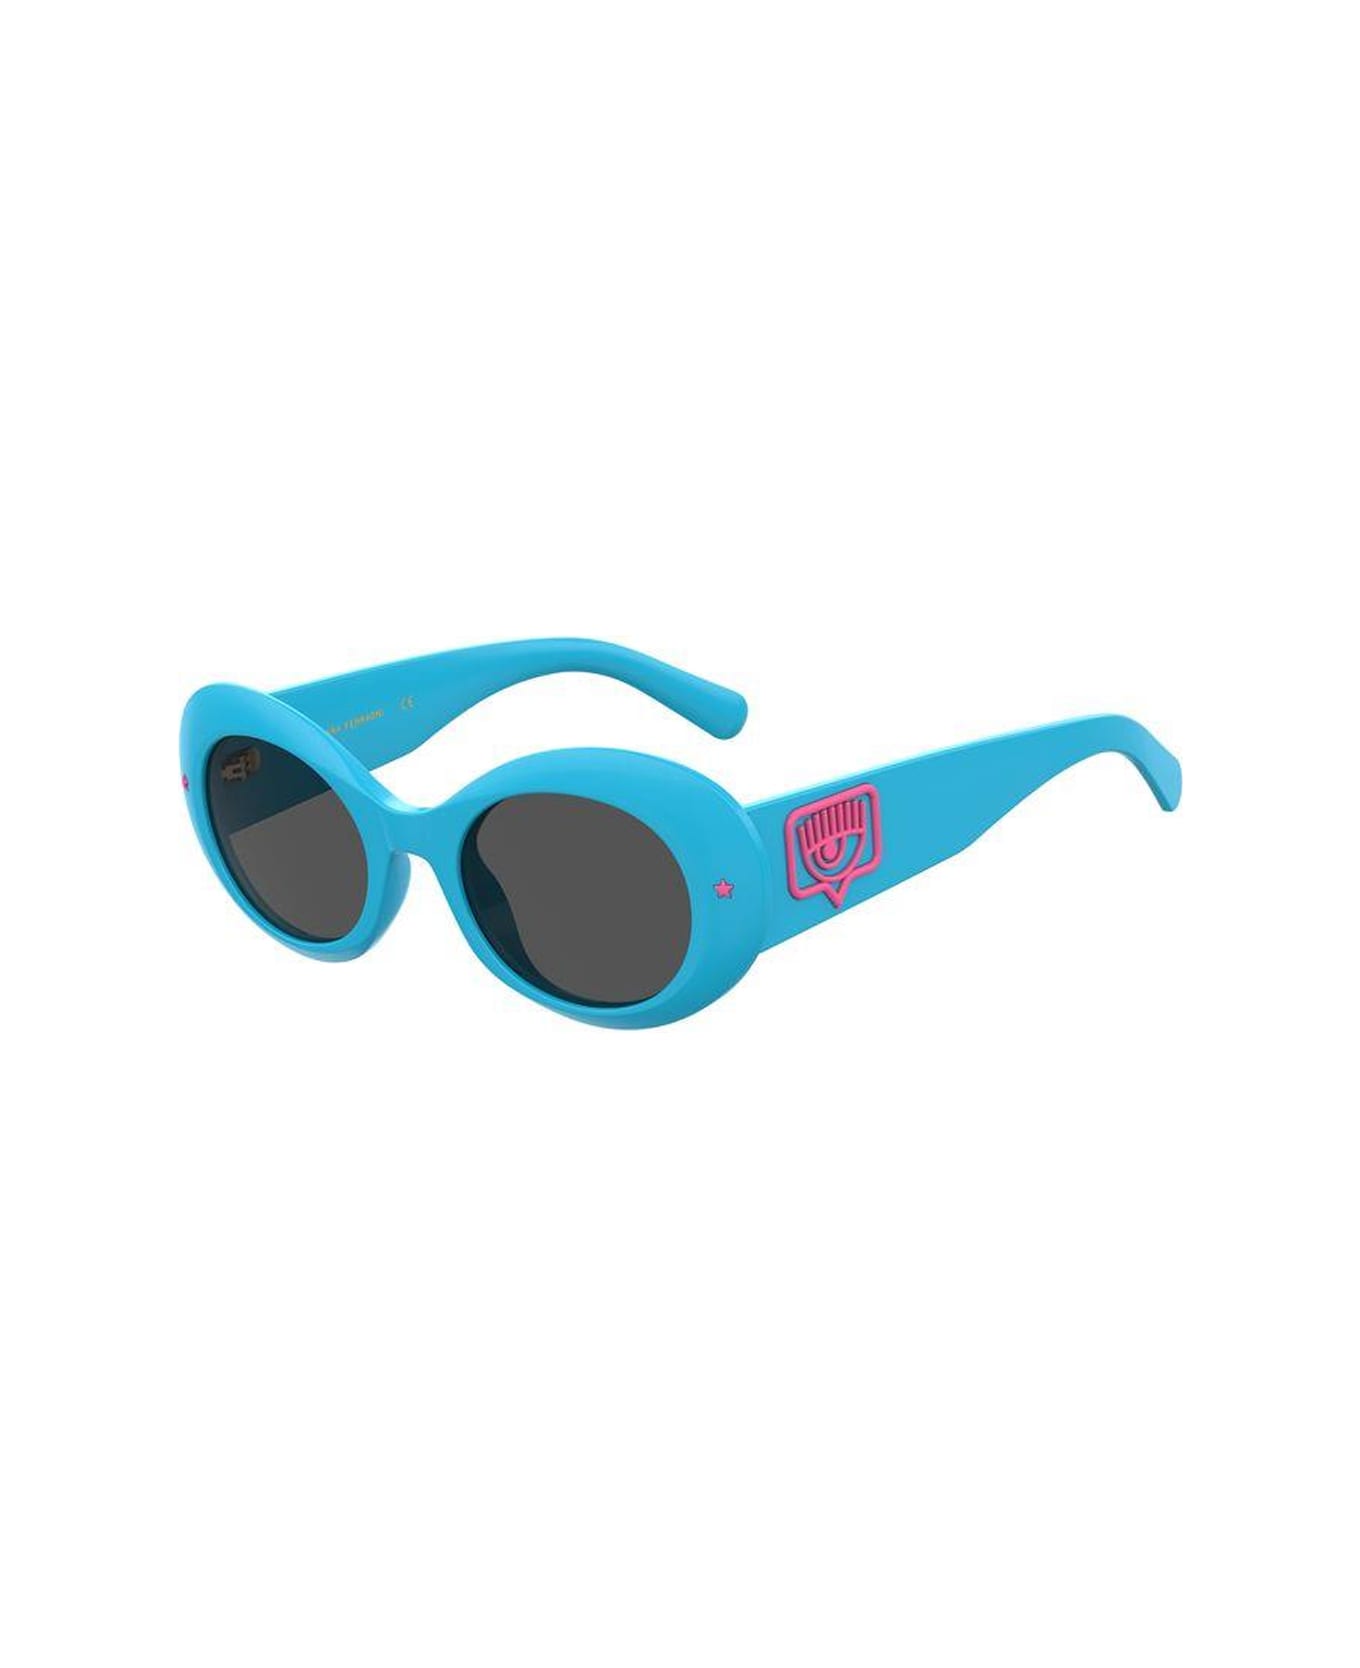 Chiara Ferragni 11em4bl0a - - Chiara Ferragni Sunglasses - Blu サングラス